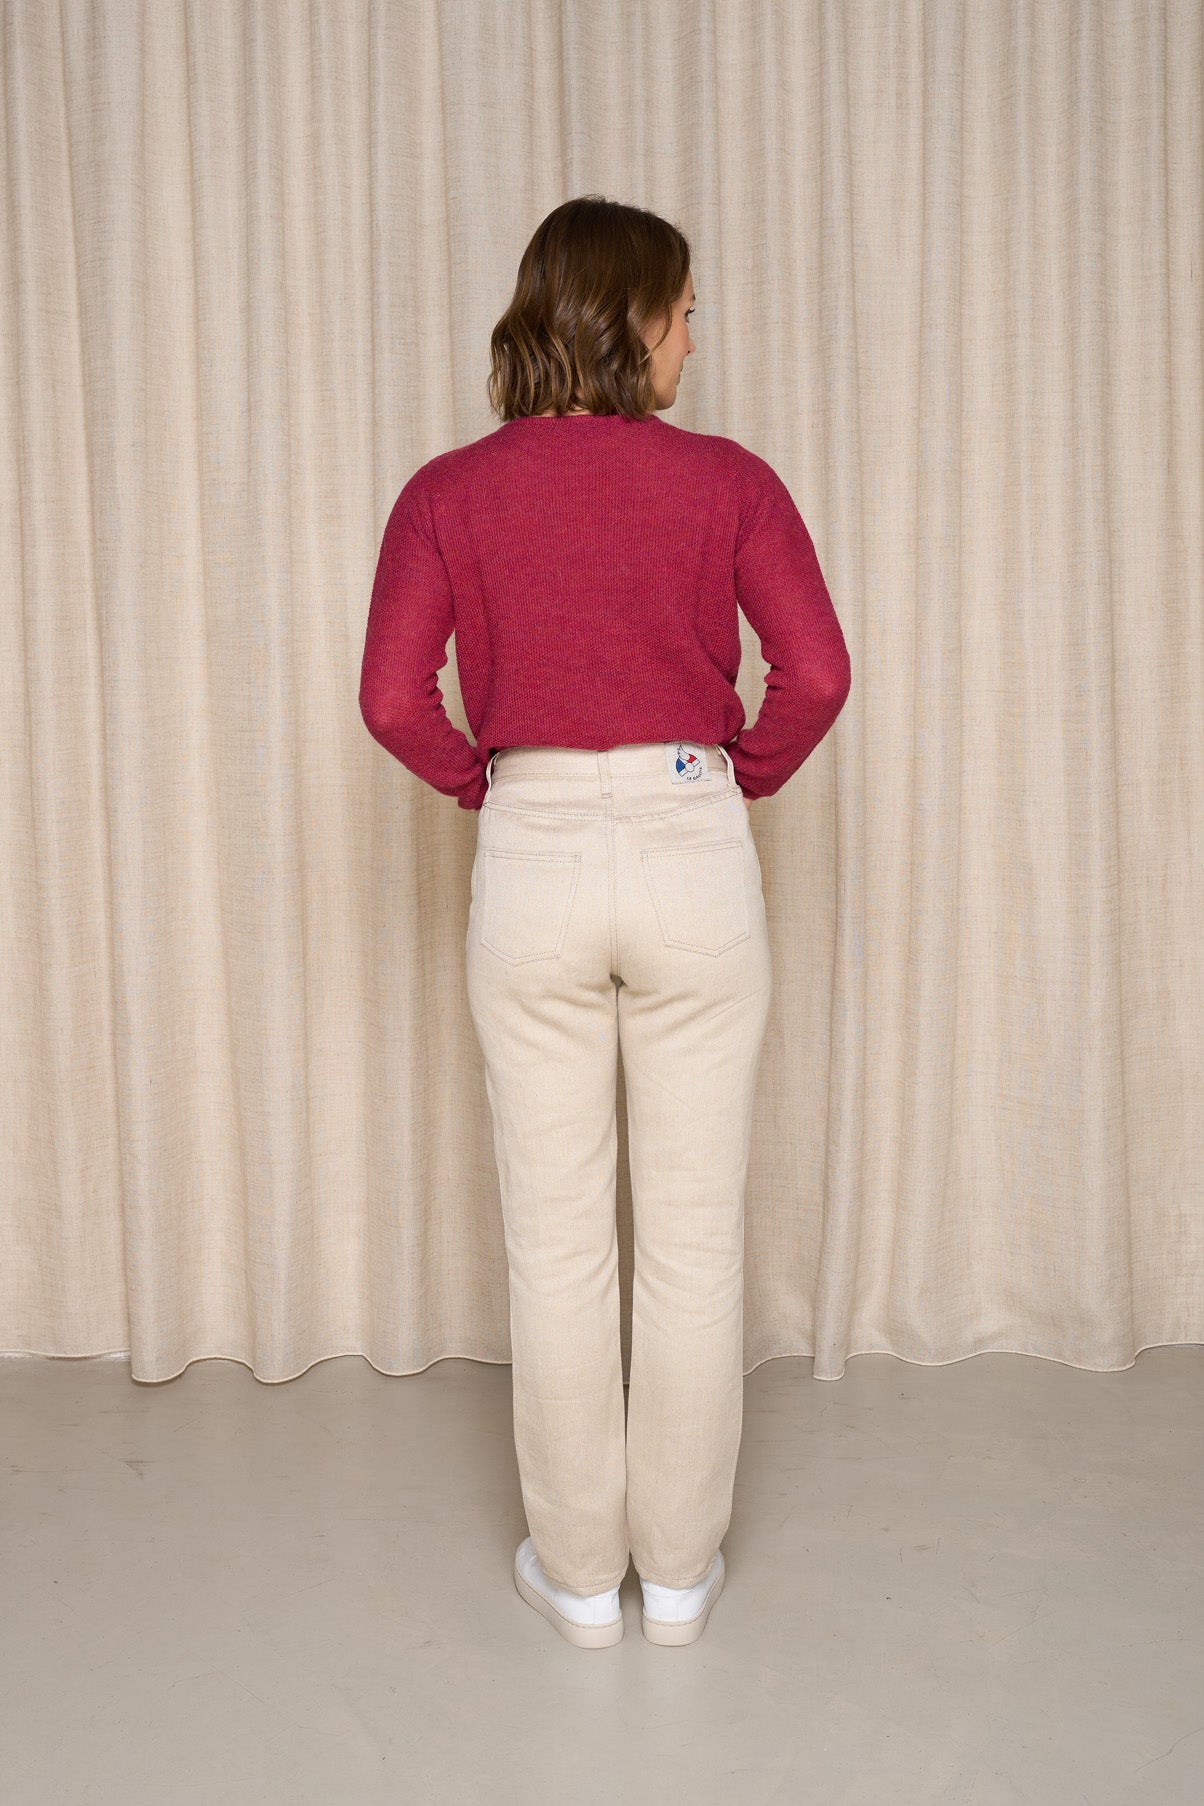 Modèle femme vue de dos portant le jeans en lin Condate en Lin Naturel à coupe droite, couleur ivoire naturelle, taille mi-haute avec fermeture à glissière, associé à un pull rouge et des baskets blanches, sur fond de rideau beige - Le Gaulois Jeans